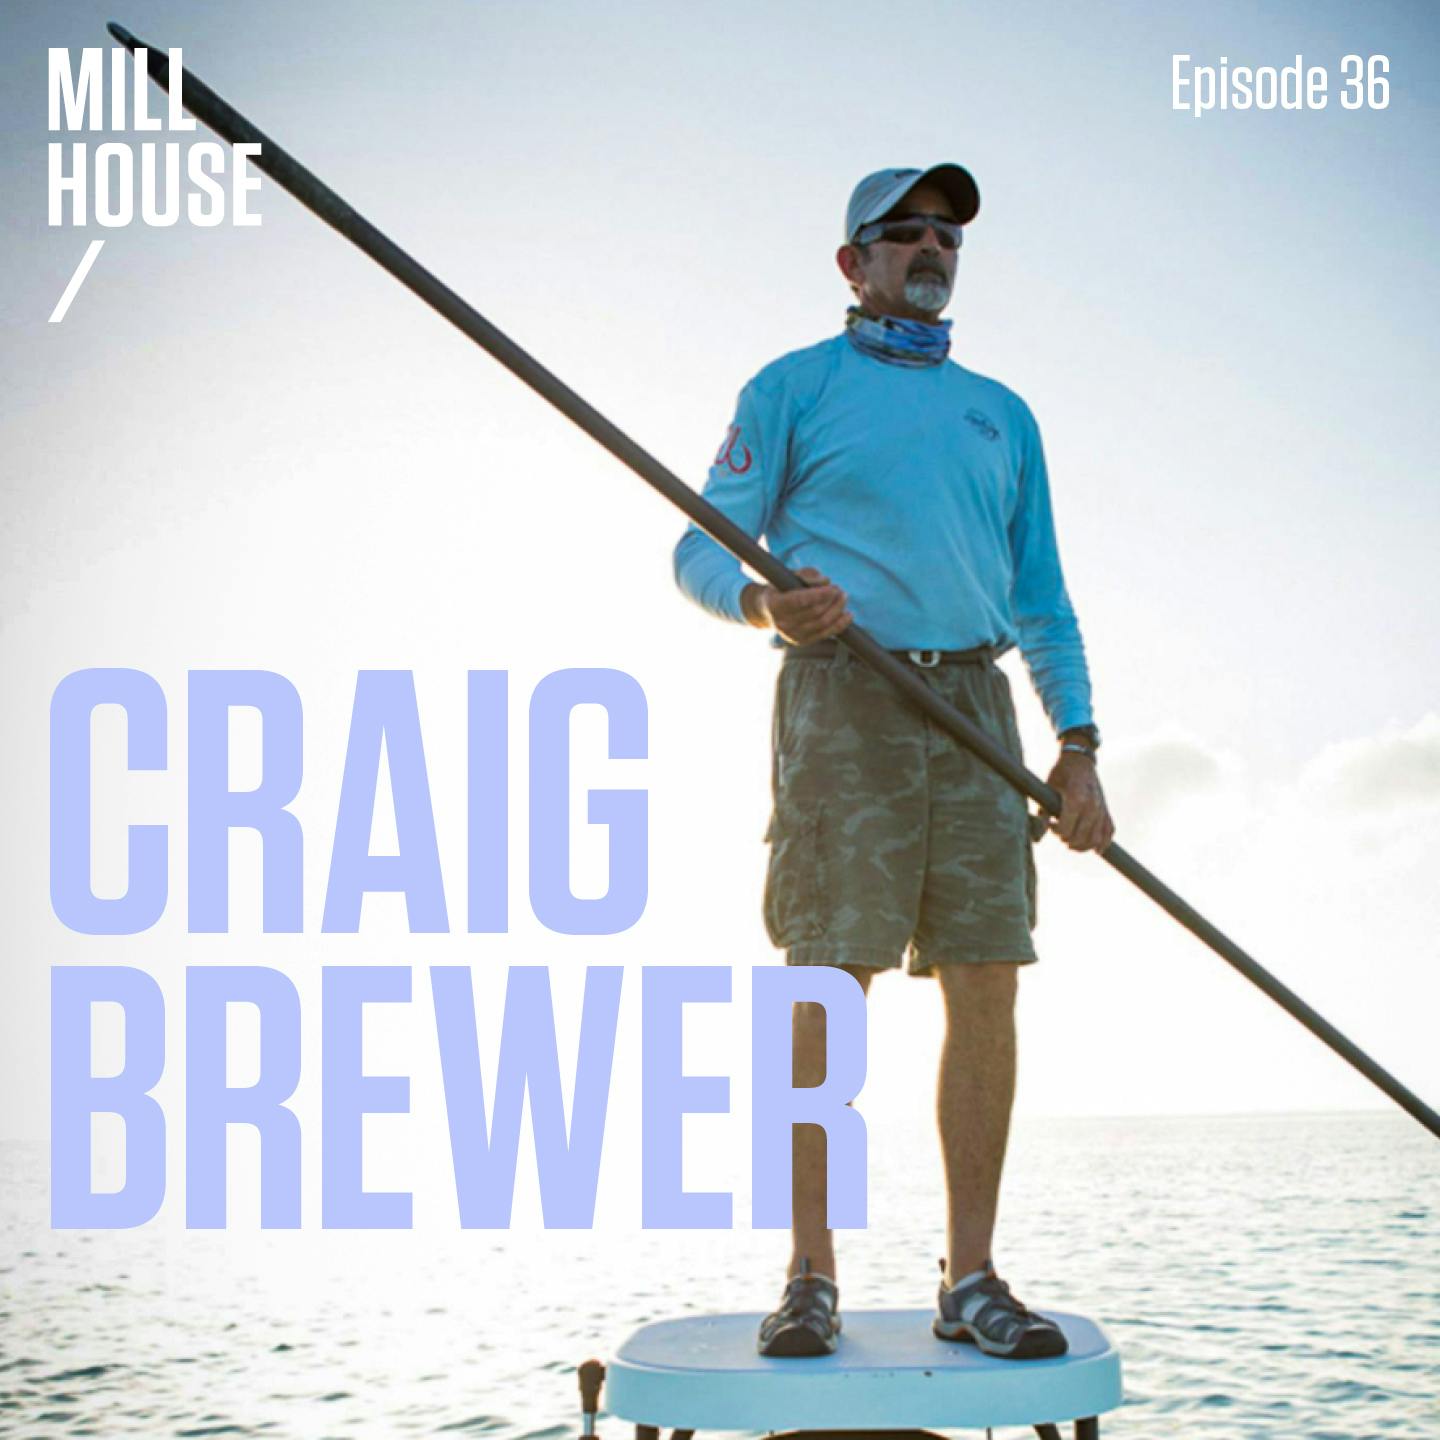 Episode 36: Capt. Craig Brewer - The Mud Man